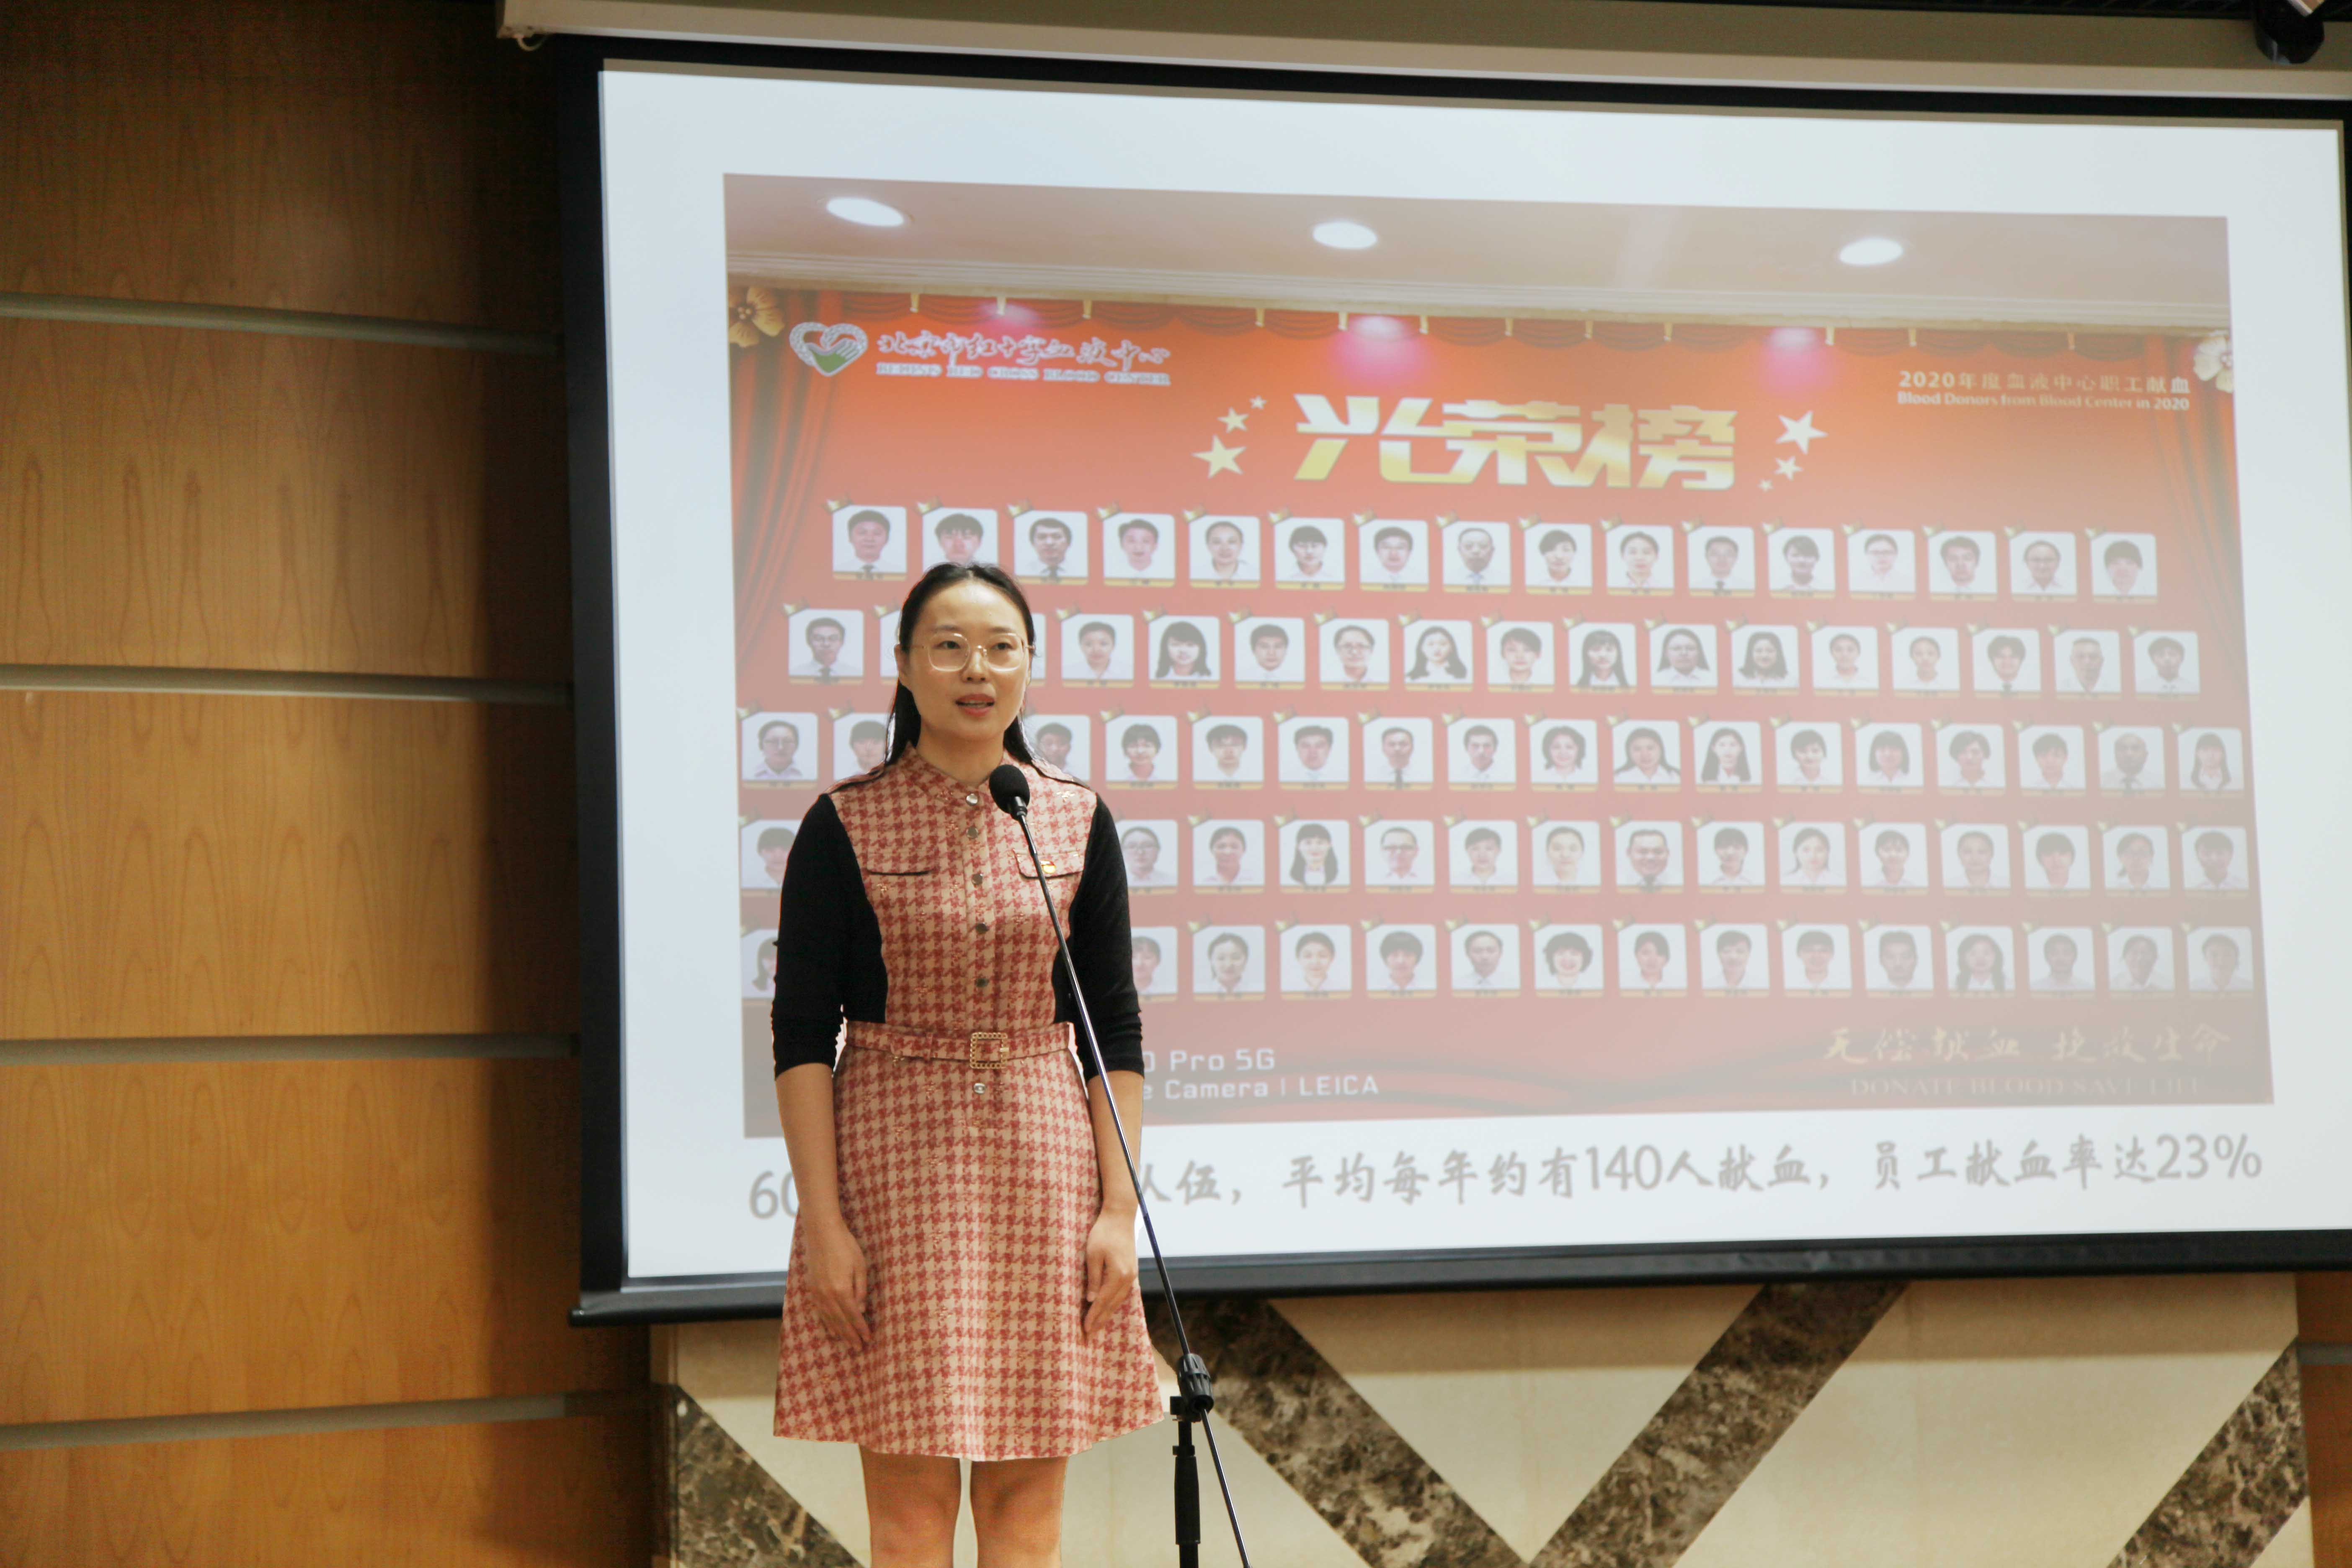 北京卫生健康系统“永远跟党走”主题宣讲团走进北京市红十字血液中心